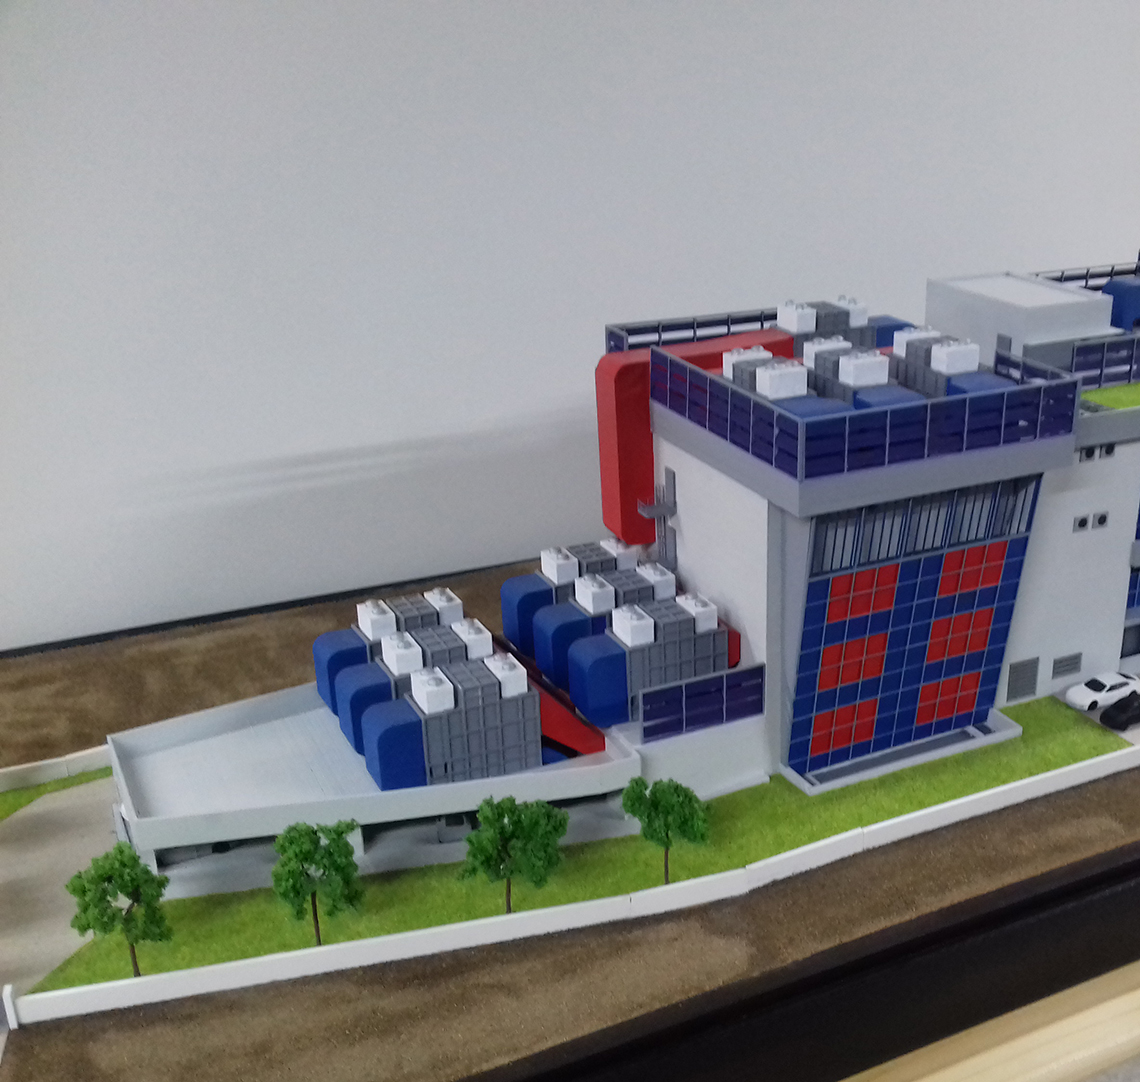 κτηριο γραφειων αρχιτεκτονικο μοντελο architectural scale model